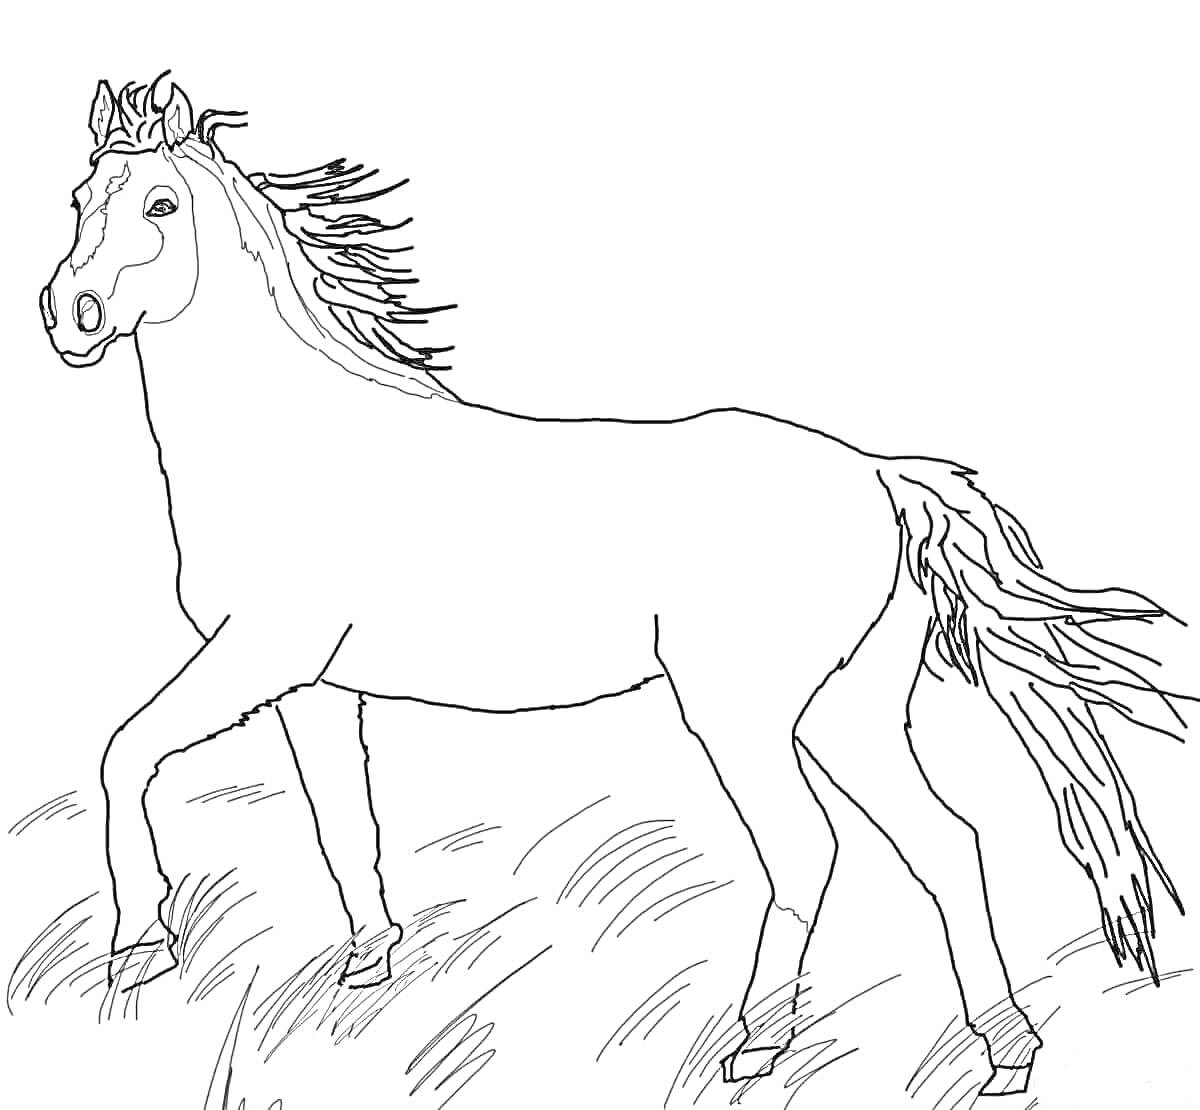 Лошадь на лугу с развевающейся гривой и хвостом